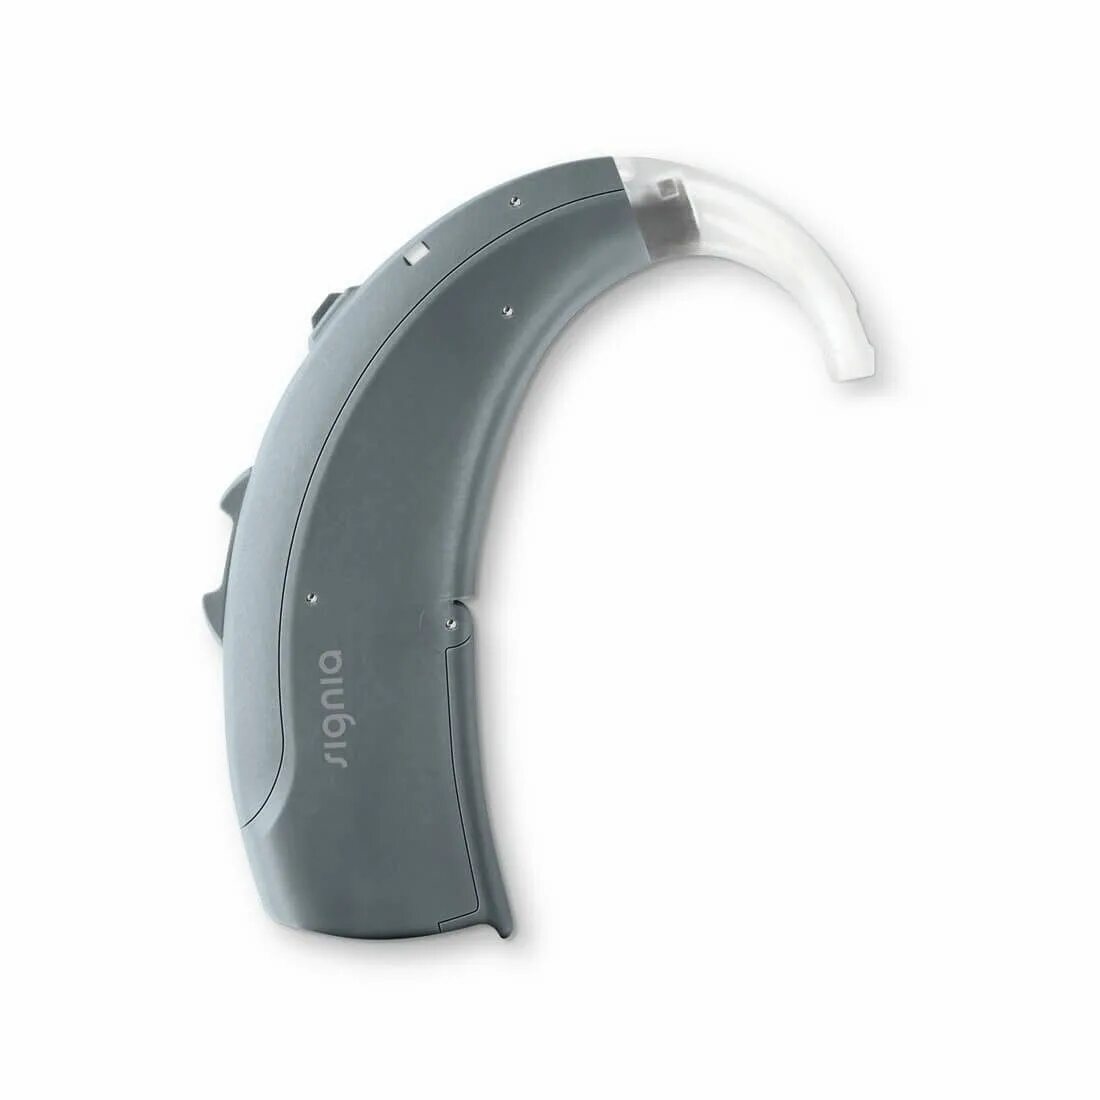 Слуховой аппарат Nitro 3mi. Motion SP Primax слуховой аппарат Signia. Заушные слуховые аппараты (BTE). Слуховые аппараты Сигния Сименс. Слуховой аппарат купить в москве недорого